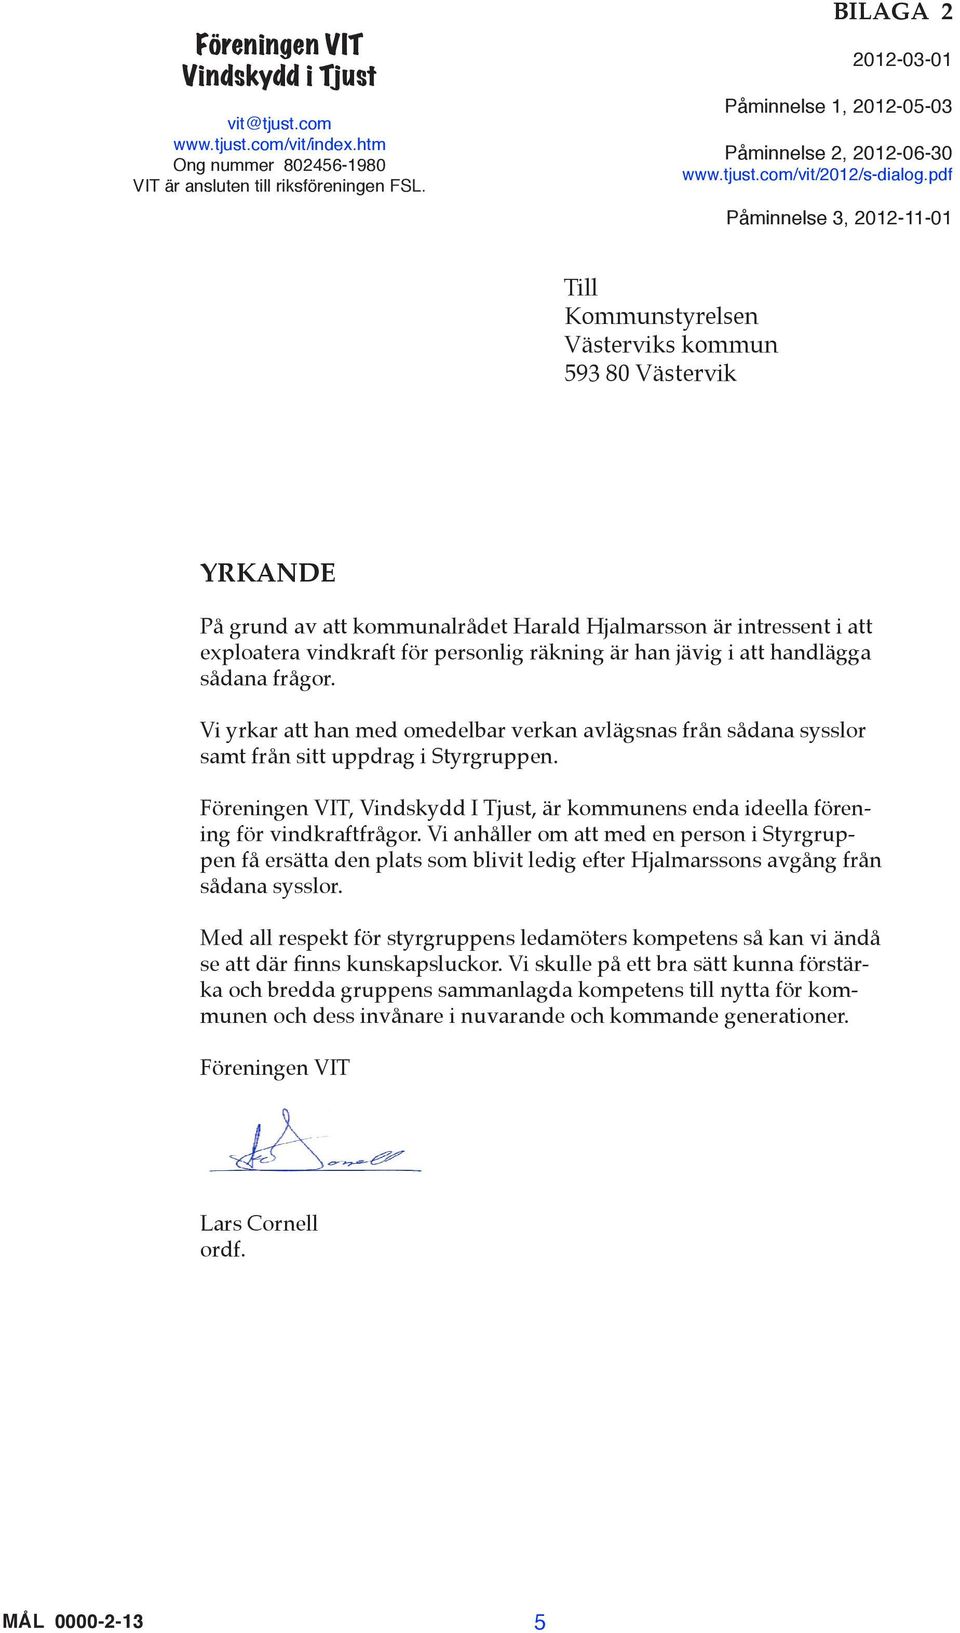 pdf Påminnelse 3, 2012-11-01 Till Kommunstyrelsen Västerviks kommun 593 80 Västervik YRKANDE På grund av att kommunalrådet Harald Hjalmarsson är intressent i att exploatera vindkraft för personlig